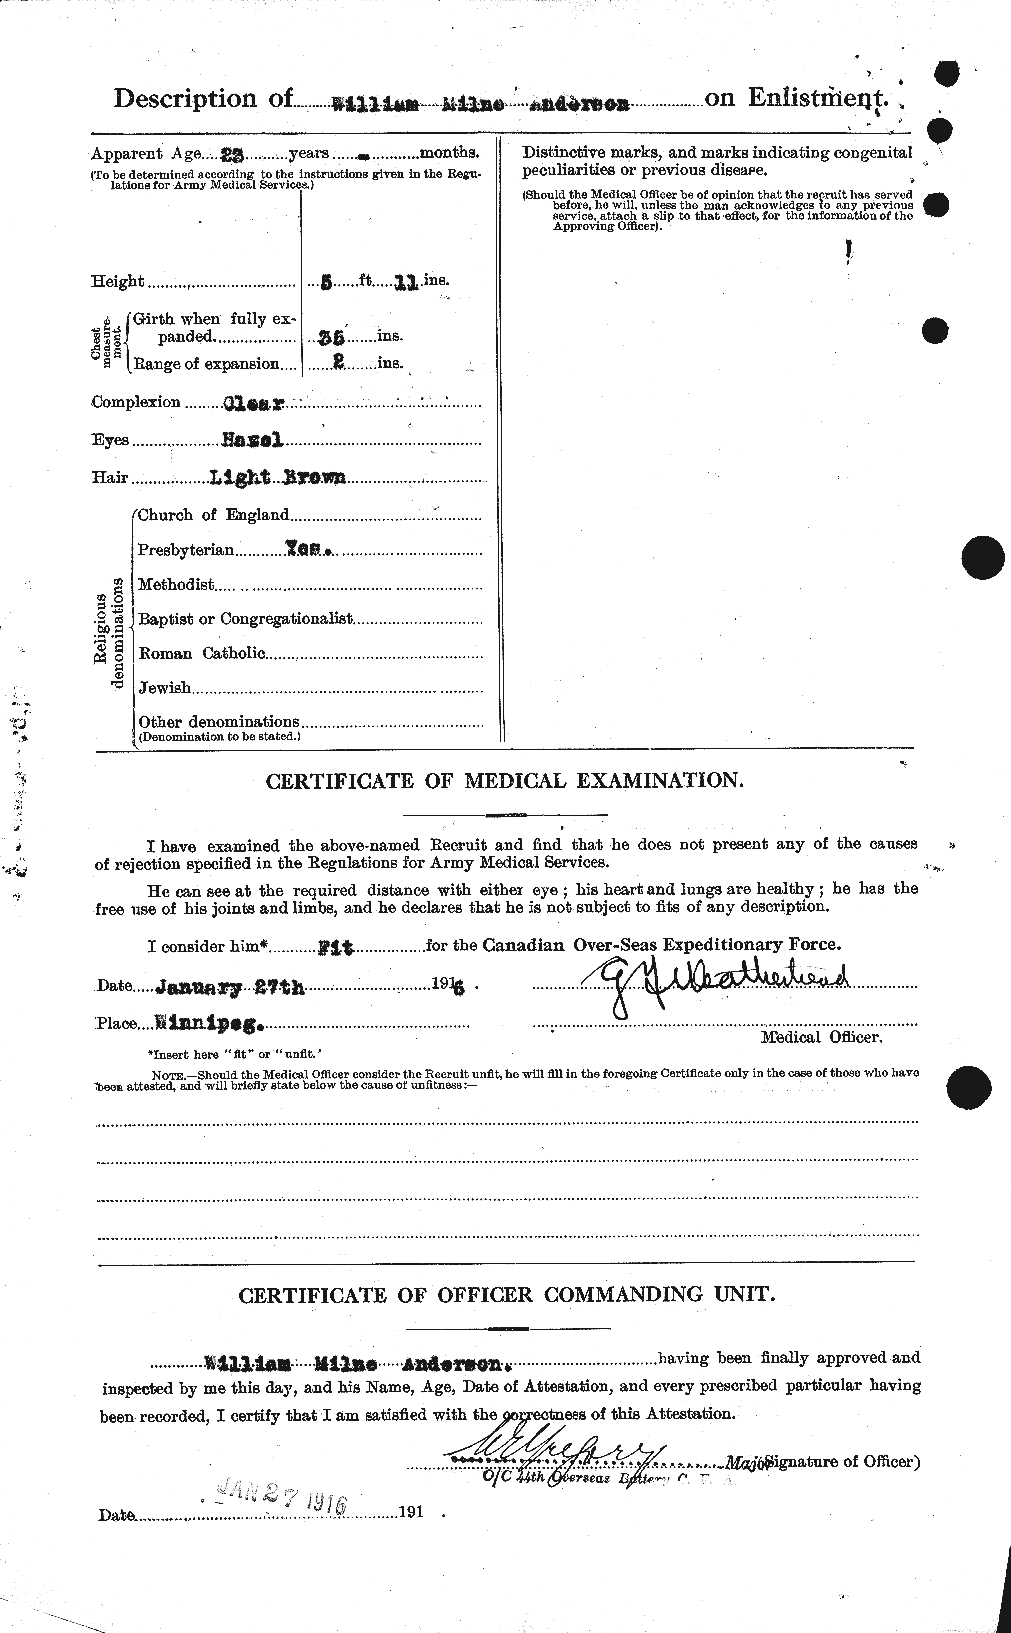 Dossiers du Personnel de la Première Guerre mondiale - CEC 210835b